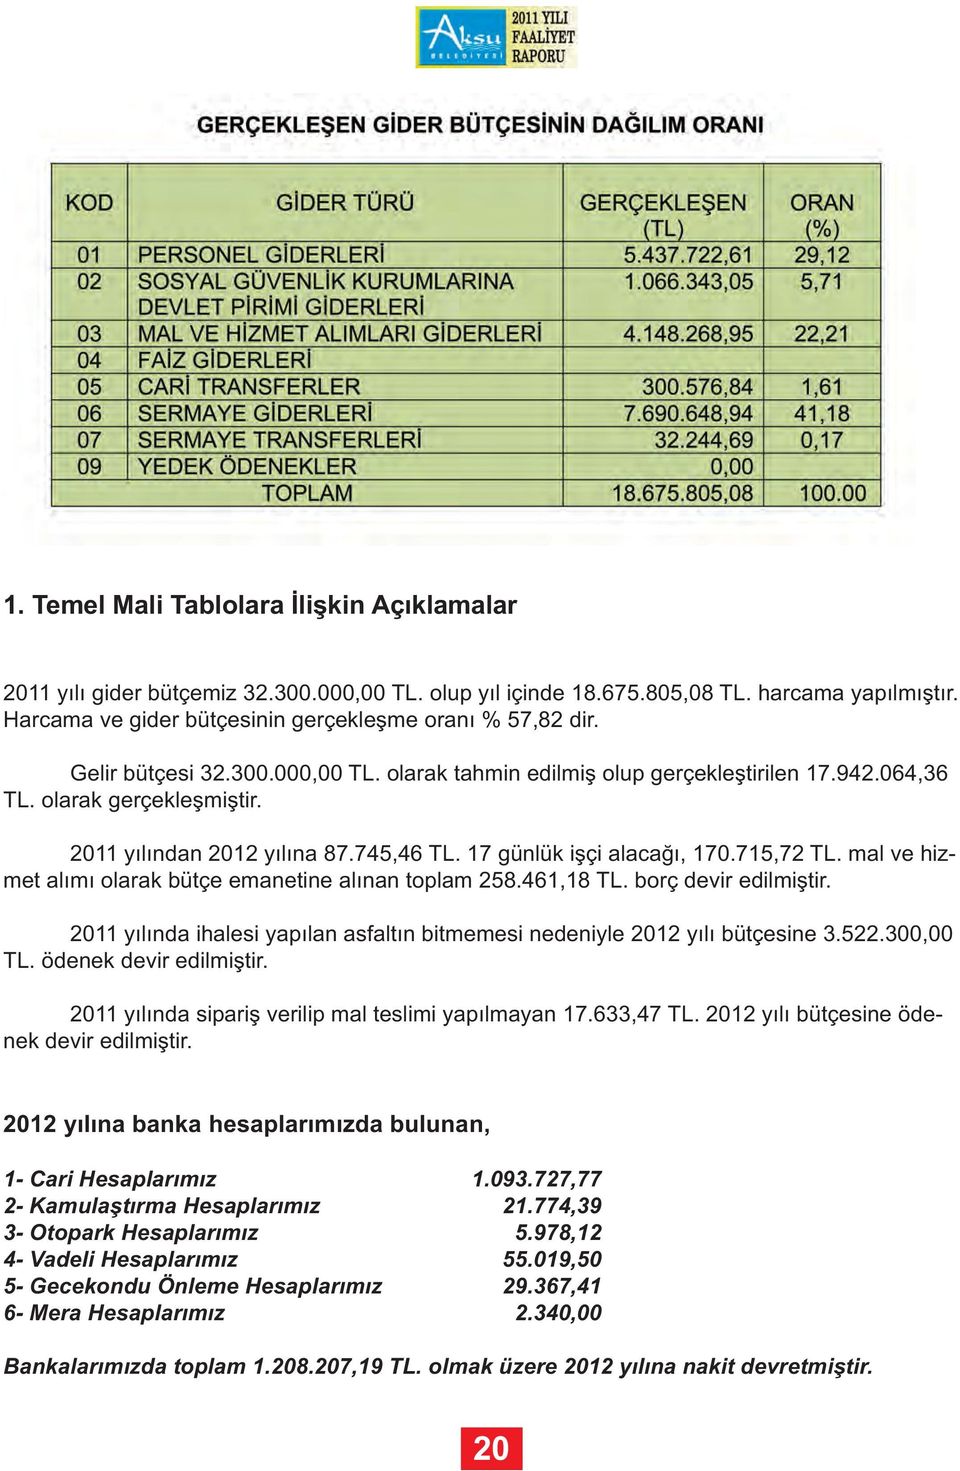 mal ve hizmet alımı olarak bütçe emanetine alınan toplam 258.461,18 TL. borç devir edilmiştir. 2011 yılında ihalesi yapılan asfaltın bitmemesi nedeniyle 2012 yılı bütçesine 3.522.300,00 TL.